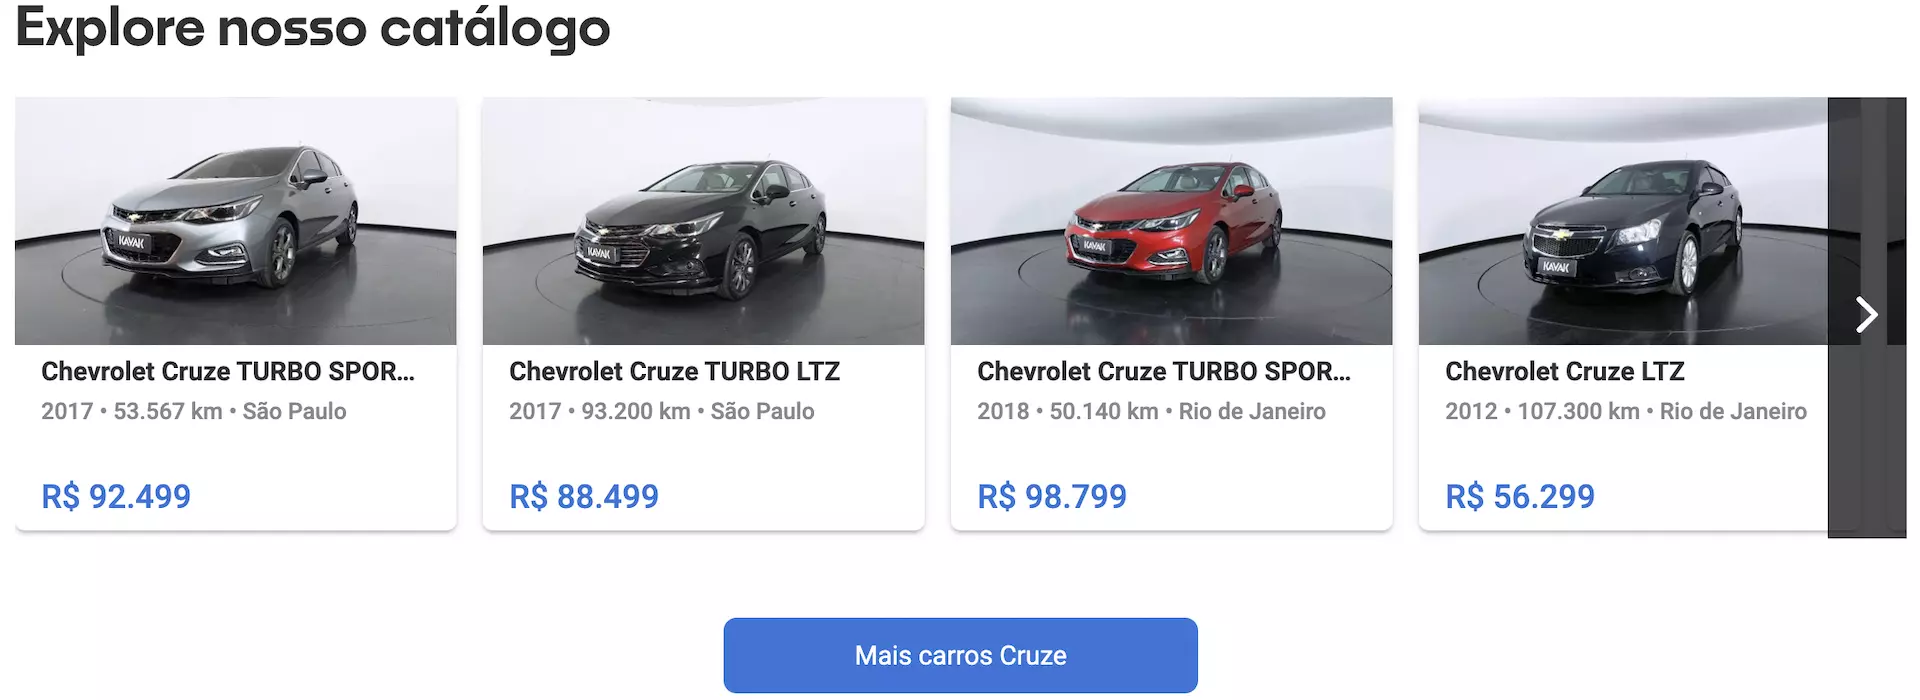 Chevrolet Cruze usado preços